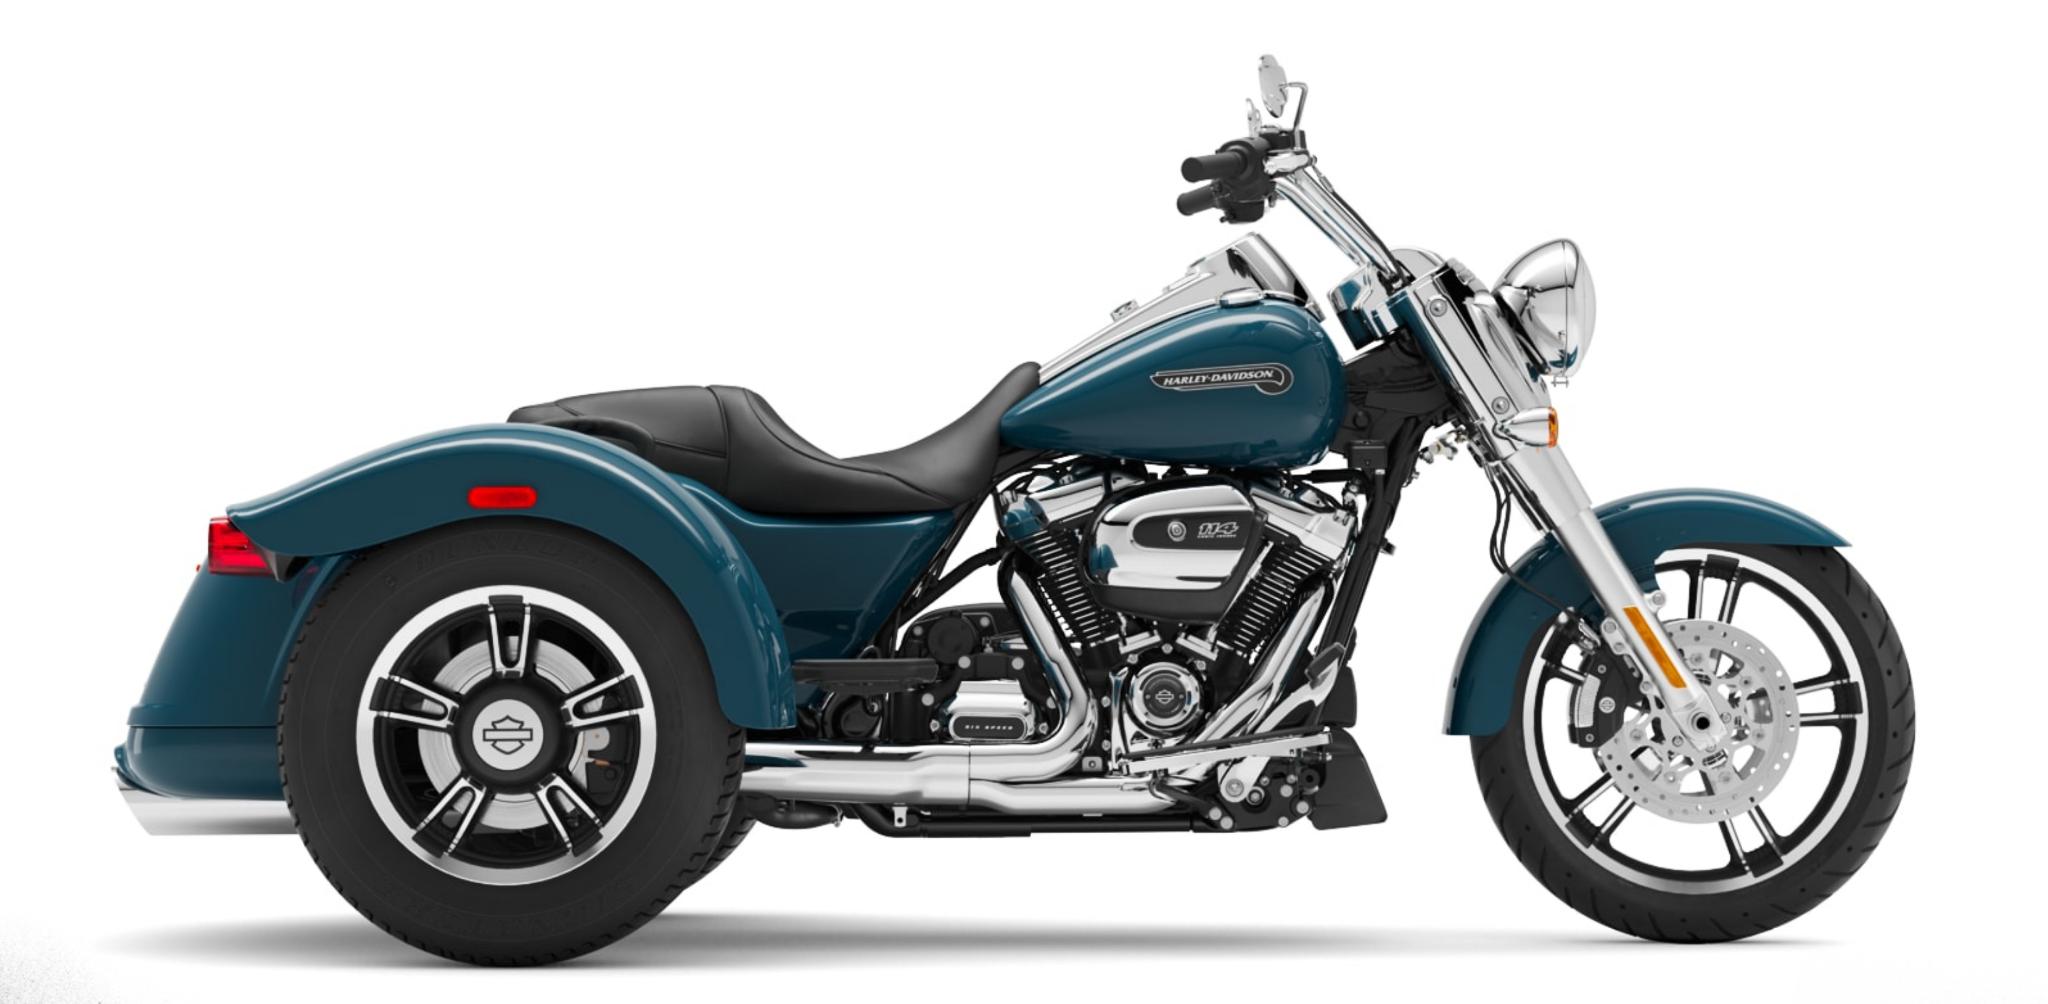 2021 Harley Davidson bike color example